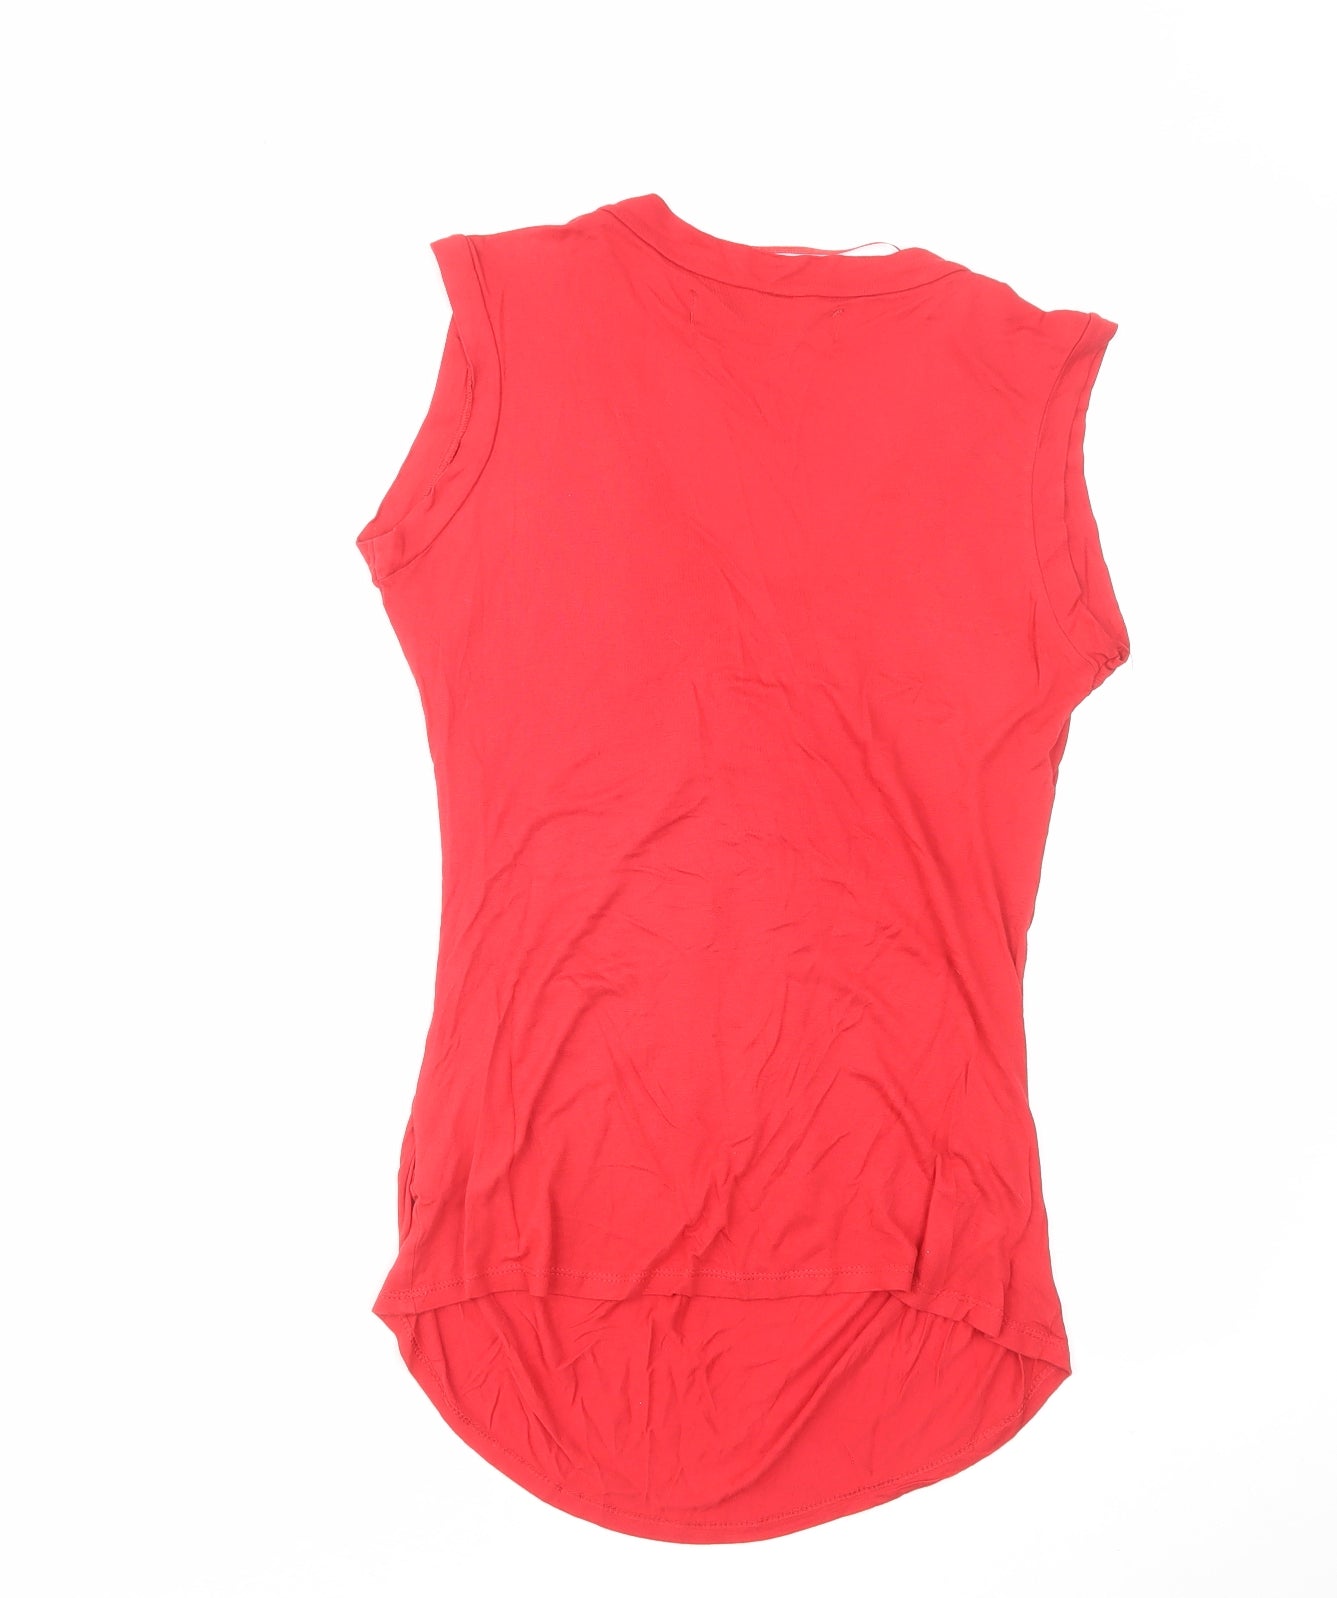 Zara Womens Red Viscose Basic T-Shirt Size M V-Neck